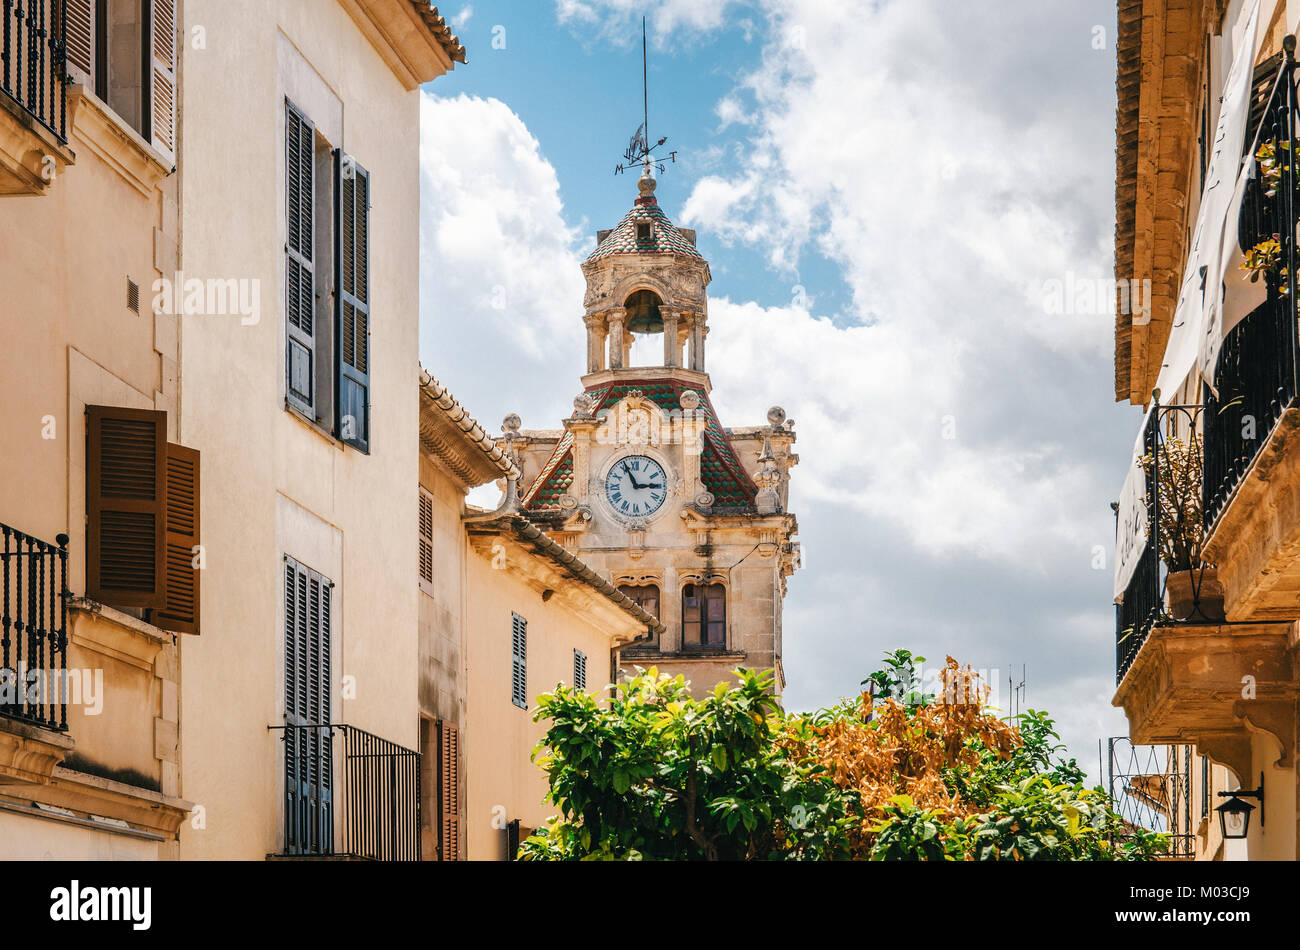 Architettura di Maiorca. La torre con orologio grande del municipio nel centro storico di Alcudia, Maiorca, isole Baleari, Spagna Foto Stock